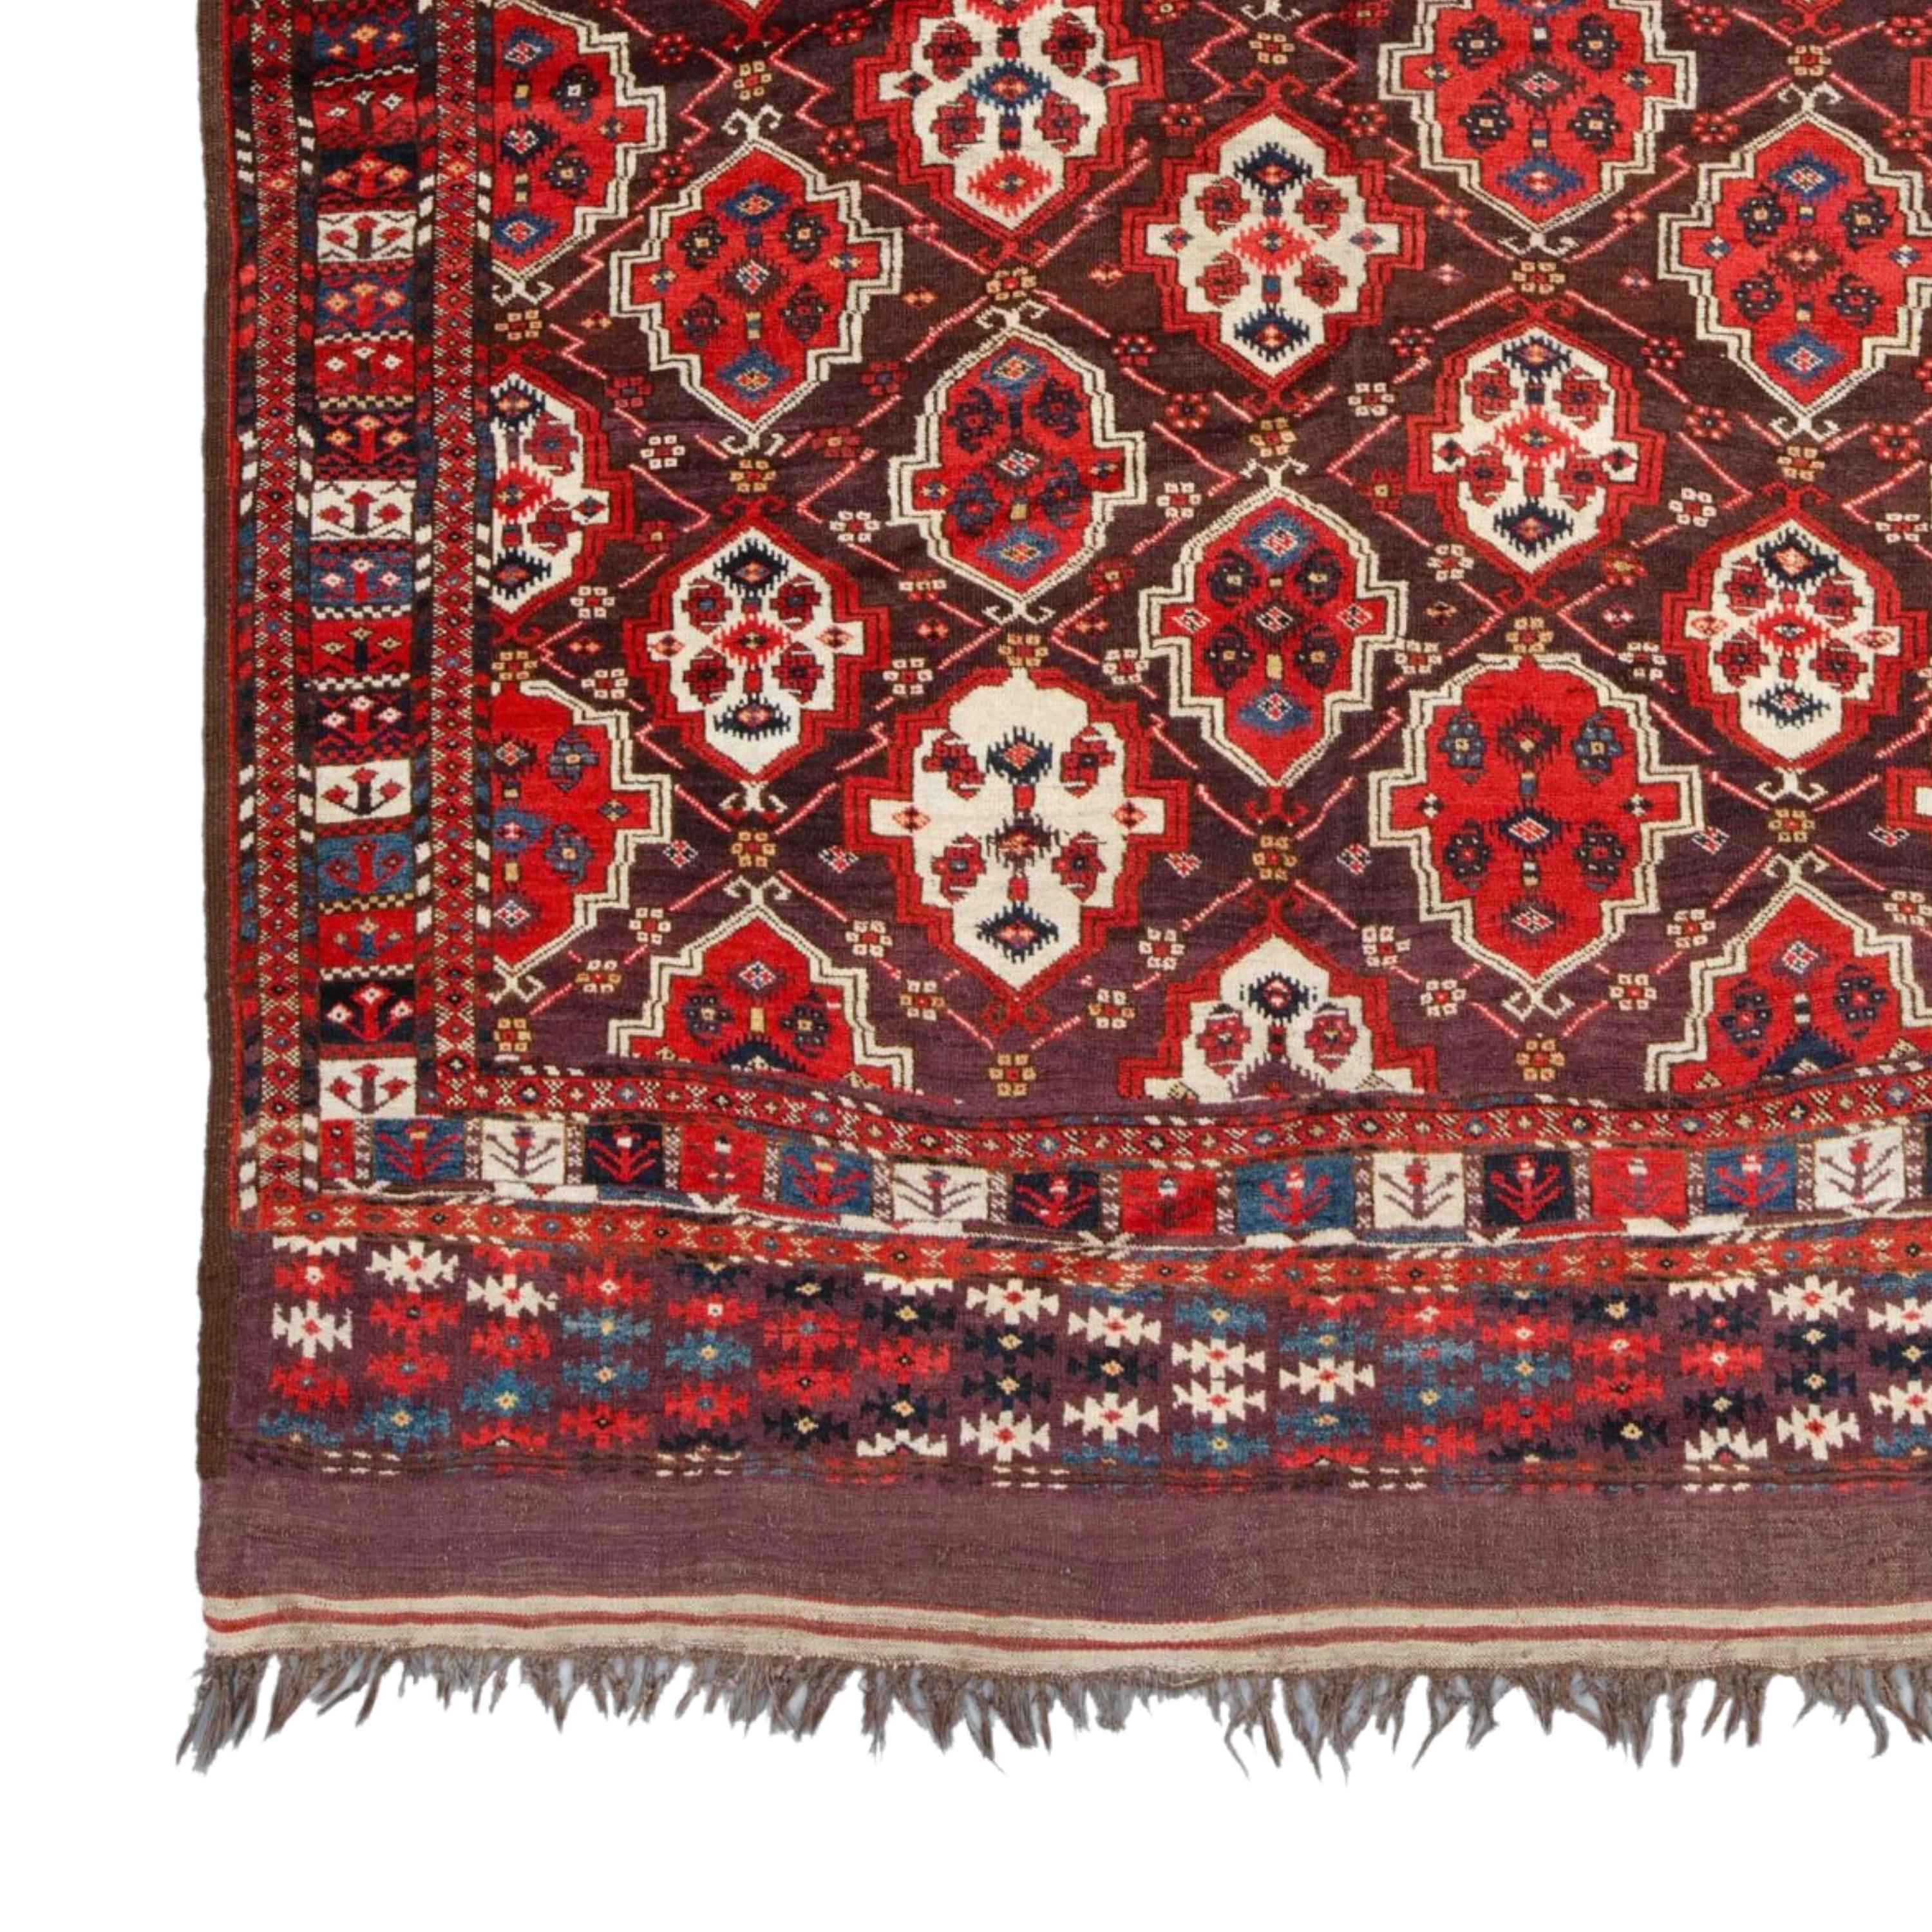 Milieu du XIXe siècle Asie centrale Turkmène Chodor Tapis principal
Taille 190 x 310 cm (74,8 x 122 In)

Cet élégant tapis turkmène Chodur Main est une œuvre d'art datant du milieu du XIXe siècle. Ce tapis aux riches nuances de rouge et de bordeaux